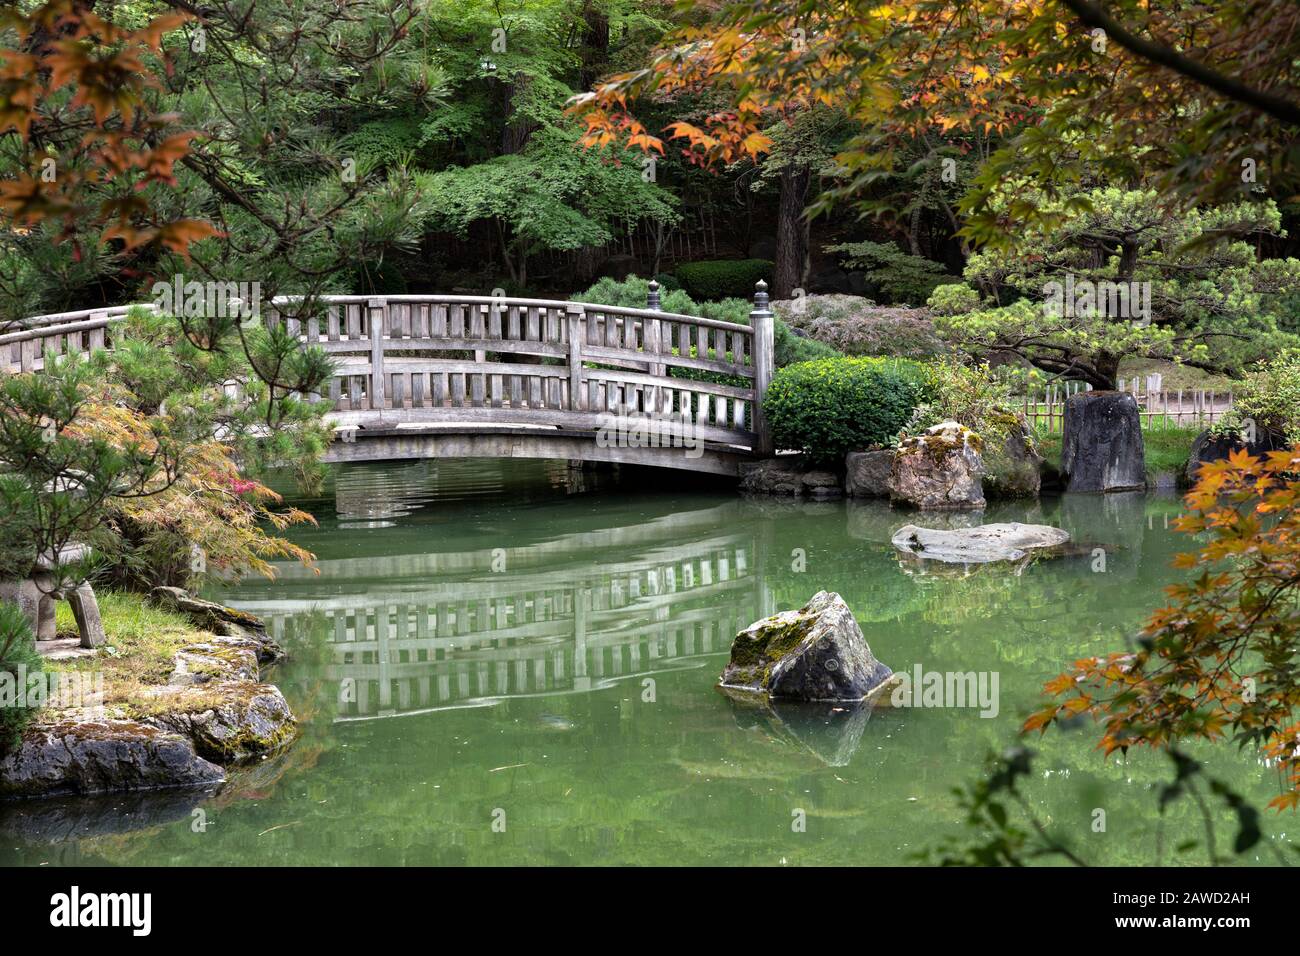 Wa17388 00 Washington Nishinomiya Japanese Garden In Spokane S